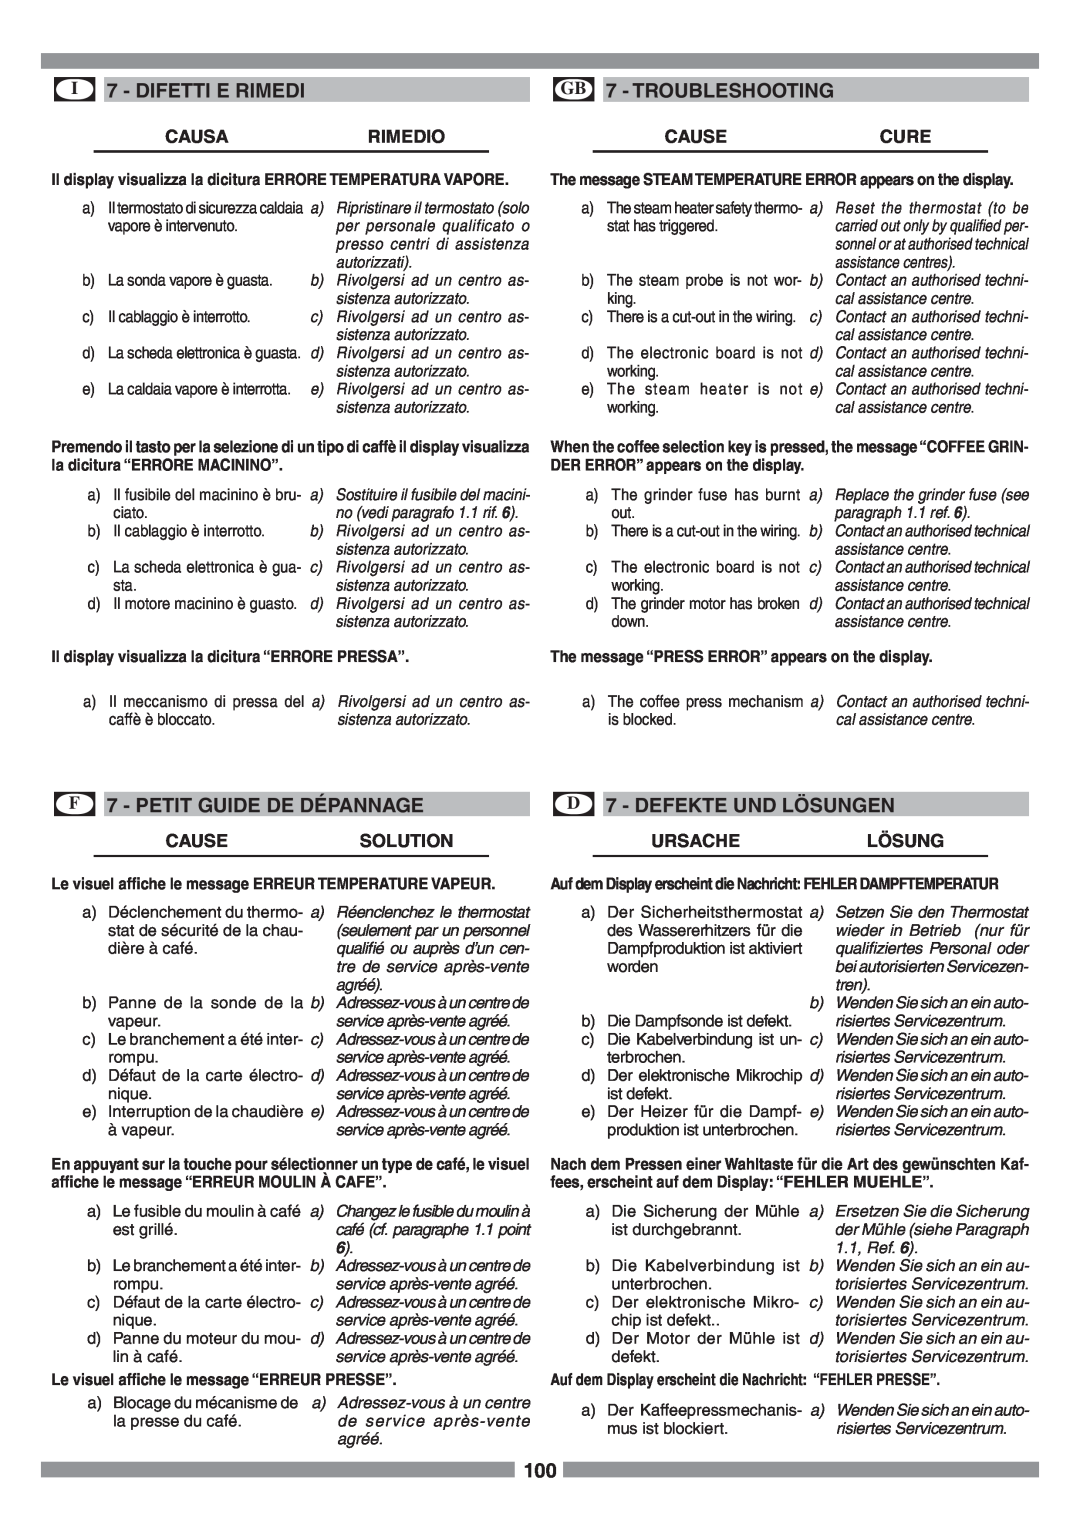 Smeg SCM1 manual I 7 - DIFETTI E RIMEDI, GB 7 - TROUBLESHOOTING, F 7 - PETIT GUIDE DE DÉPANNAGE, D 7 - DEFEKTE UND LÖSUNGEN 